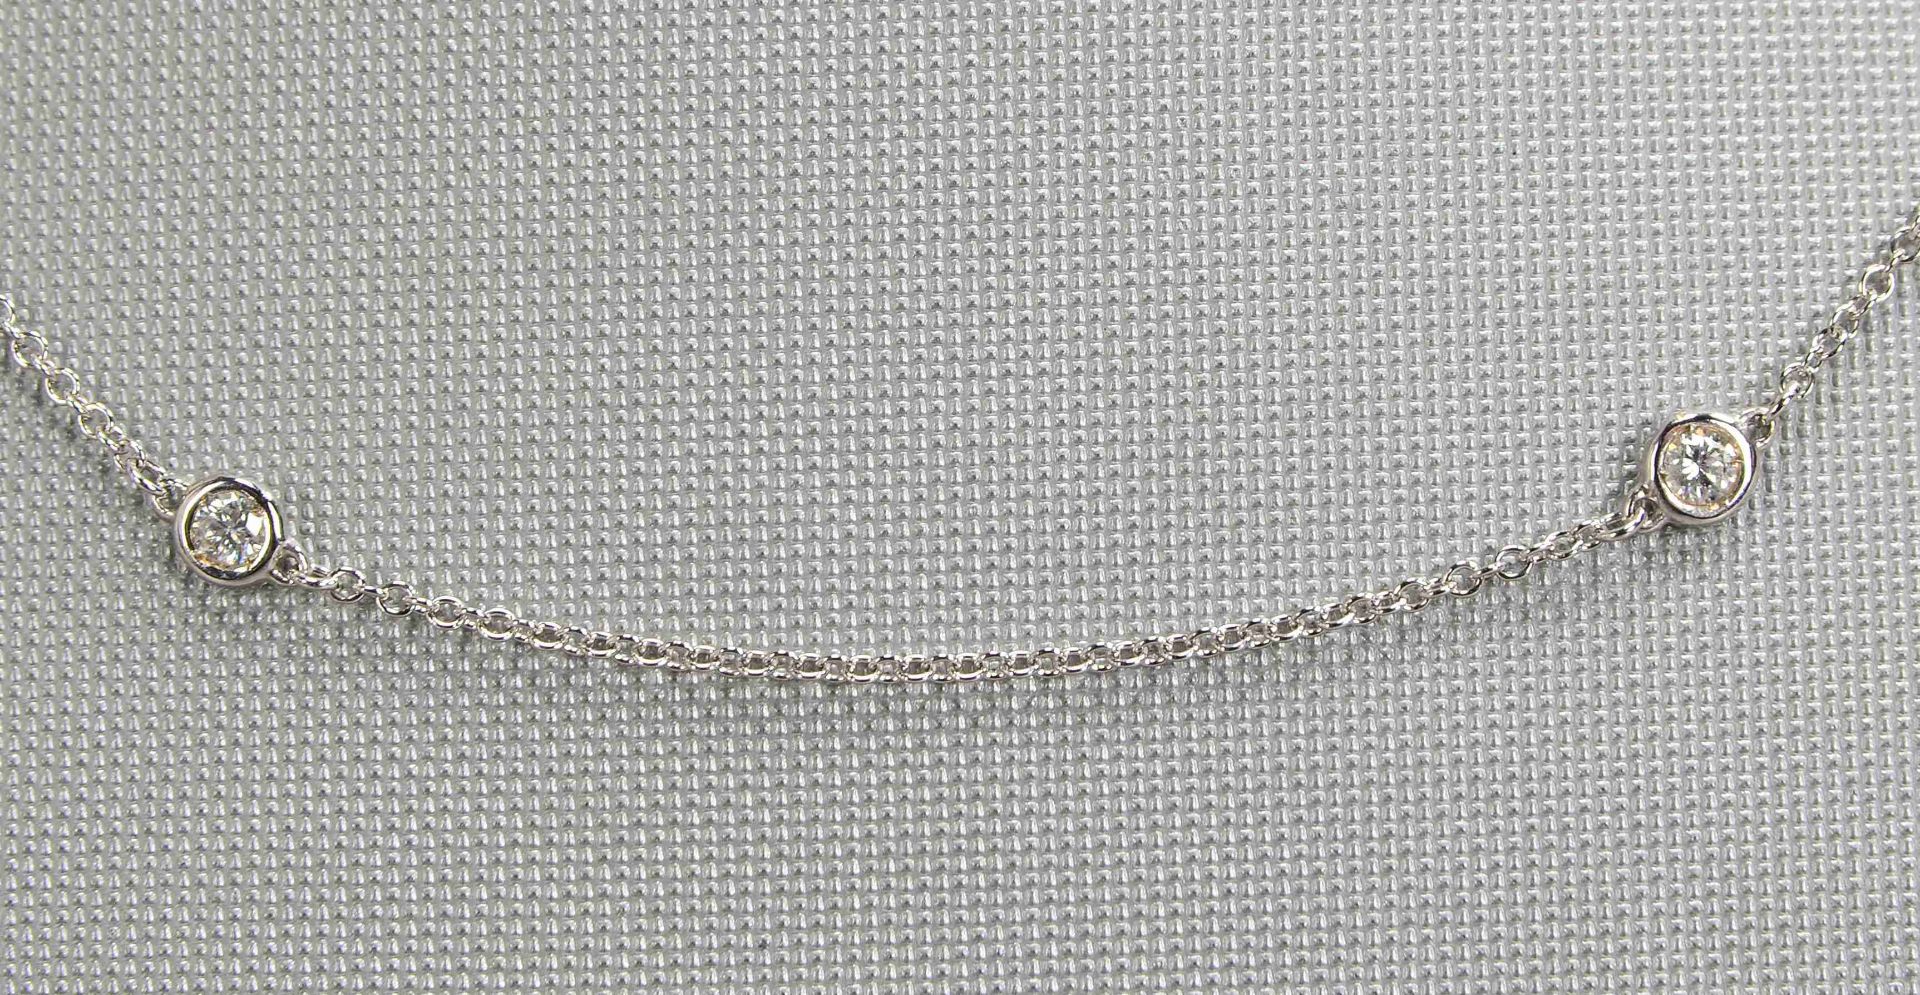 Halskette, 585 WG (gestempelt), besetzt mit 6x kleinen Brillanten/zusammen ca. 0,40 ct - Image 2 of 2